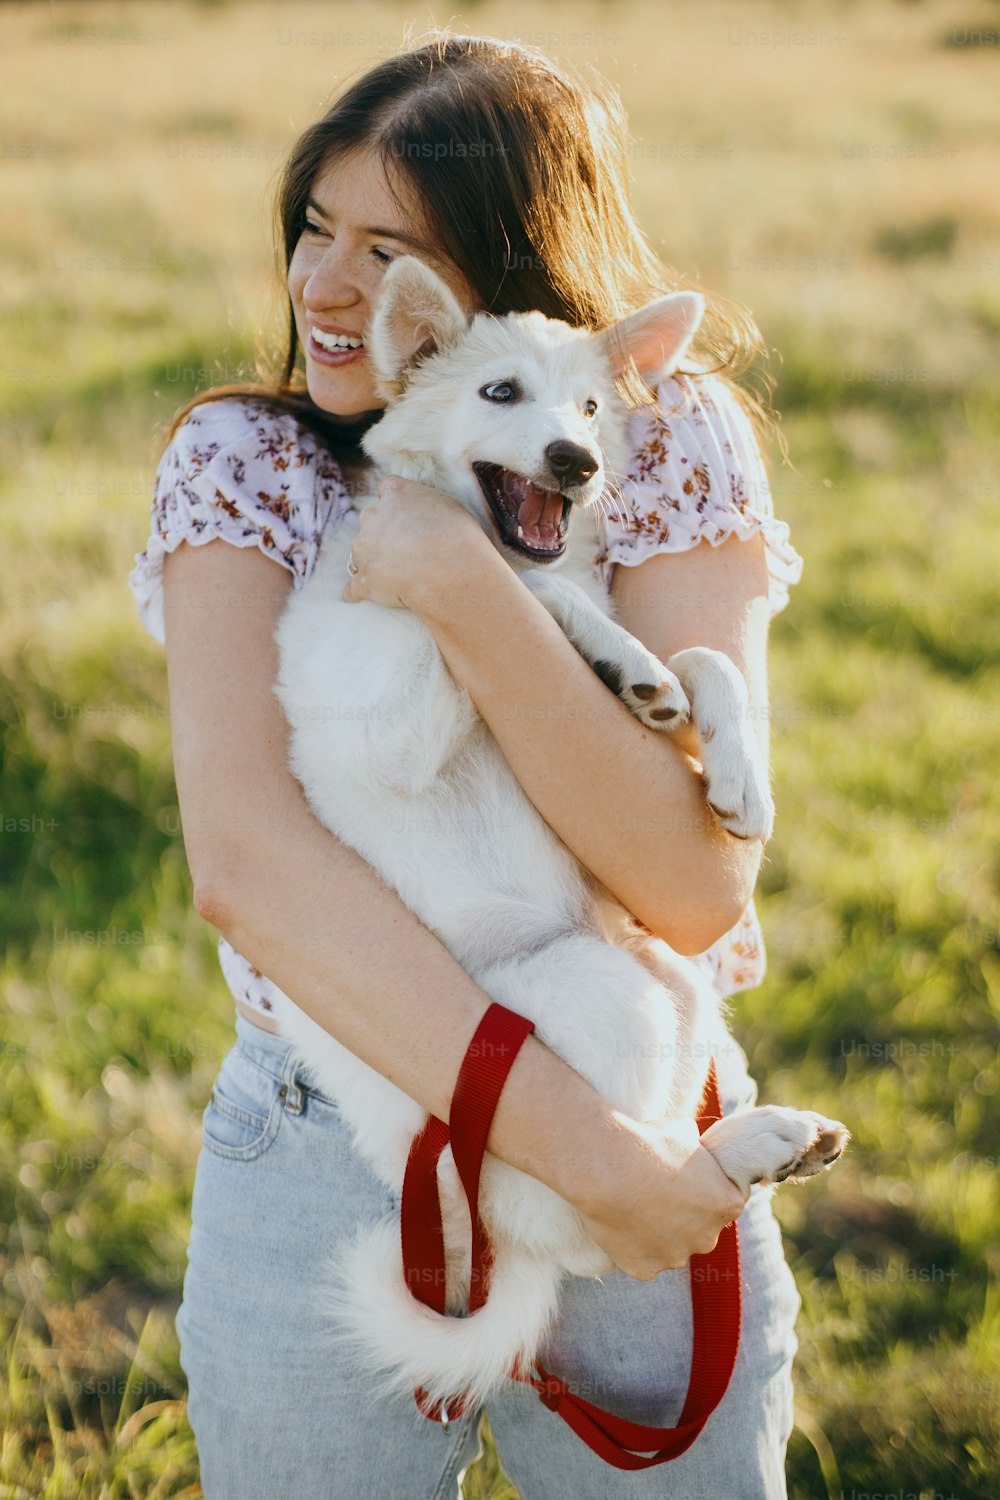 세련 된 행복한 여자는 여름 초원의 따뜻한 일몰 빛에 귀여운 재미있는 흰색 강아지를 껴안고 있습니다. 사랑스러운 스위스 양치기 솜털 강아지와 놀고 있는 캐주얼한 젊은 여성. 아름다운 재미있는 순간들